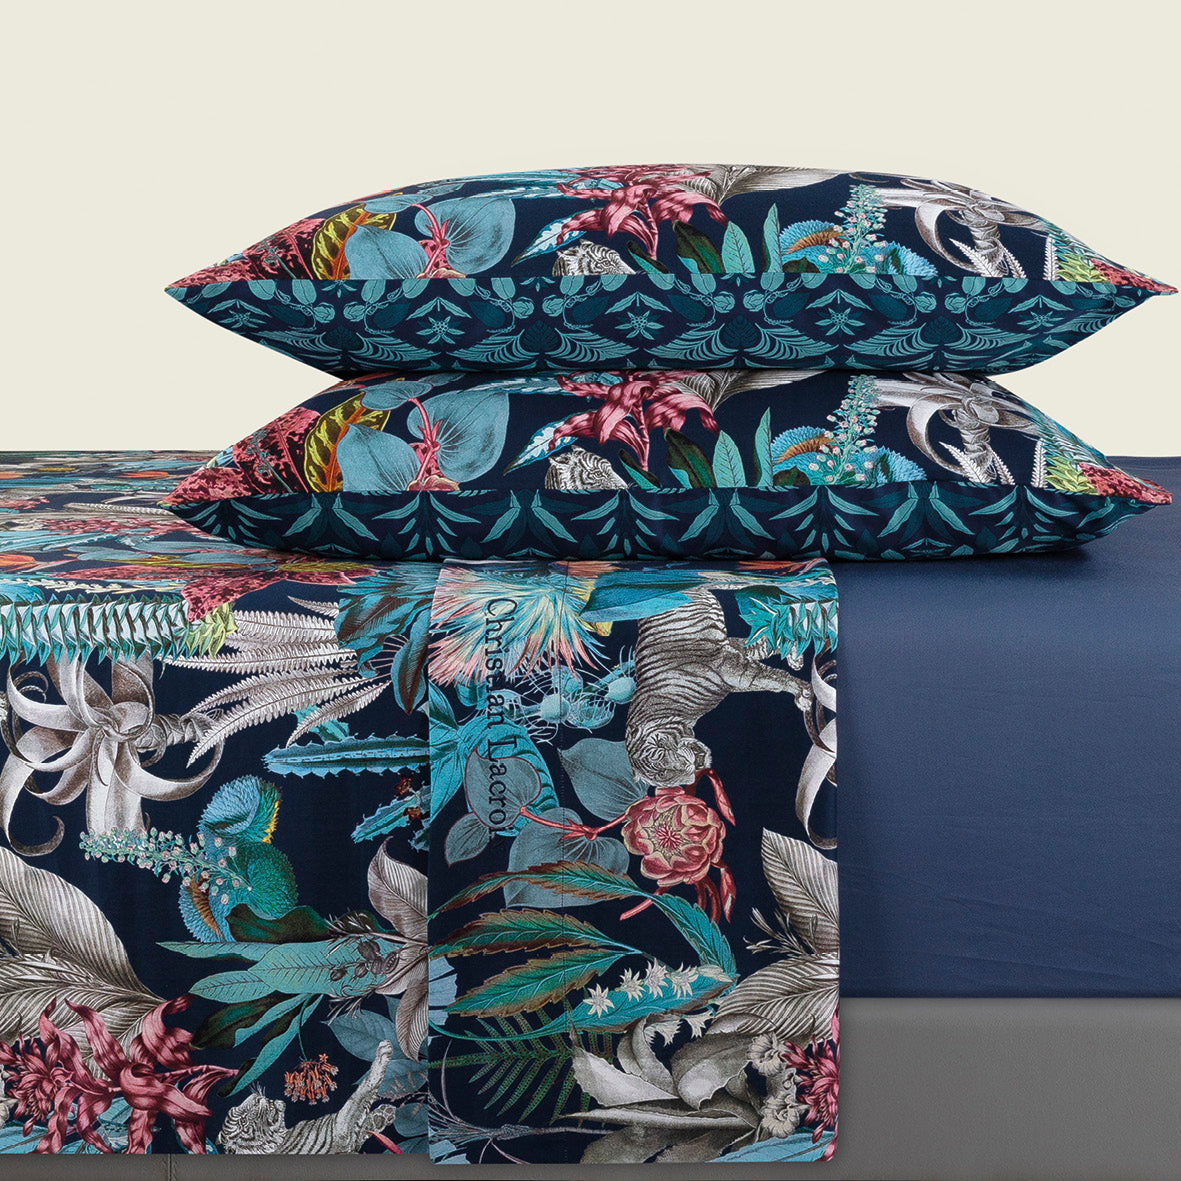 Sheet set: fitted sheet, flat sheet, pillowcase(s) in cotton satin - design: Zanzibar blue